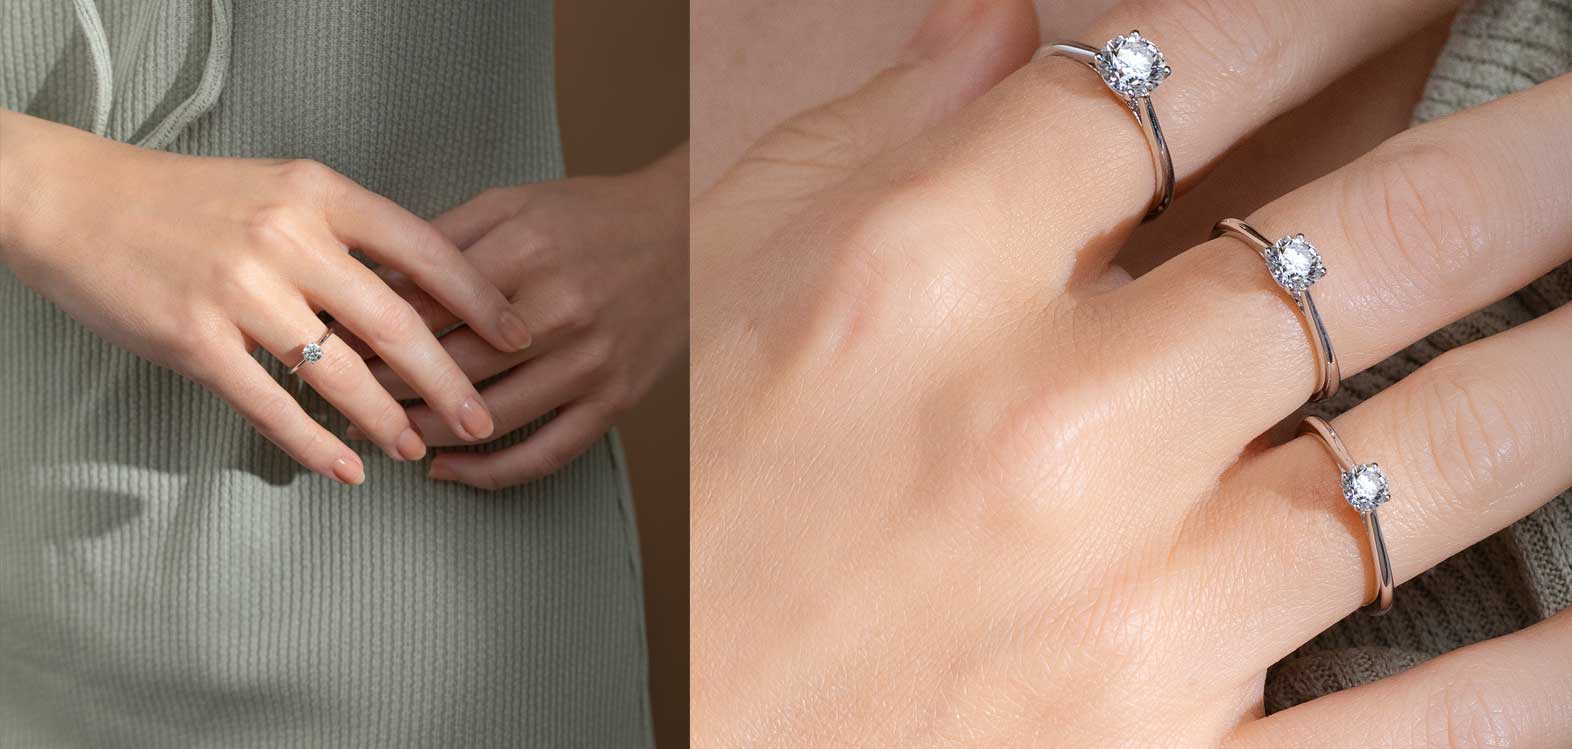 anello fidanzamento Cartier con diamante solitario